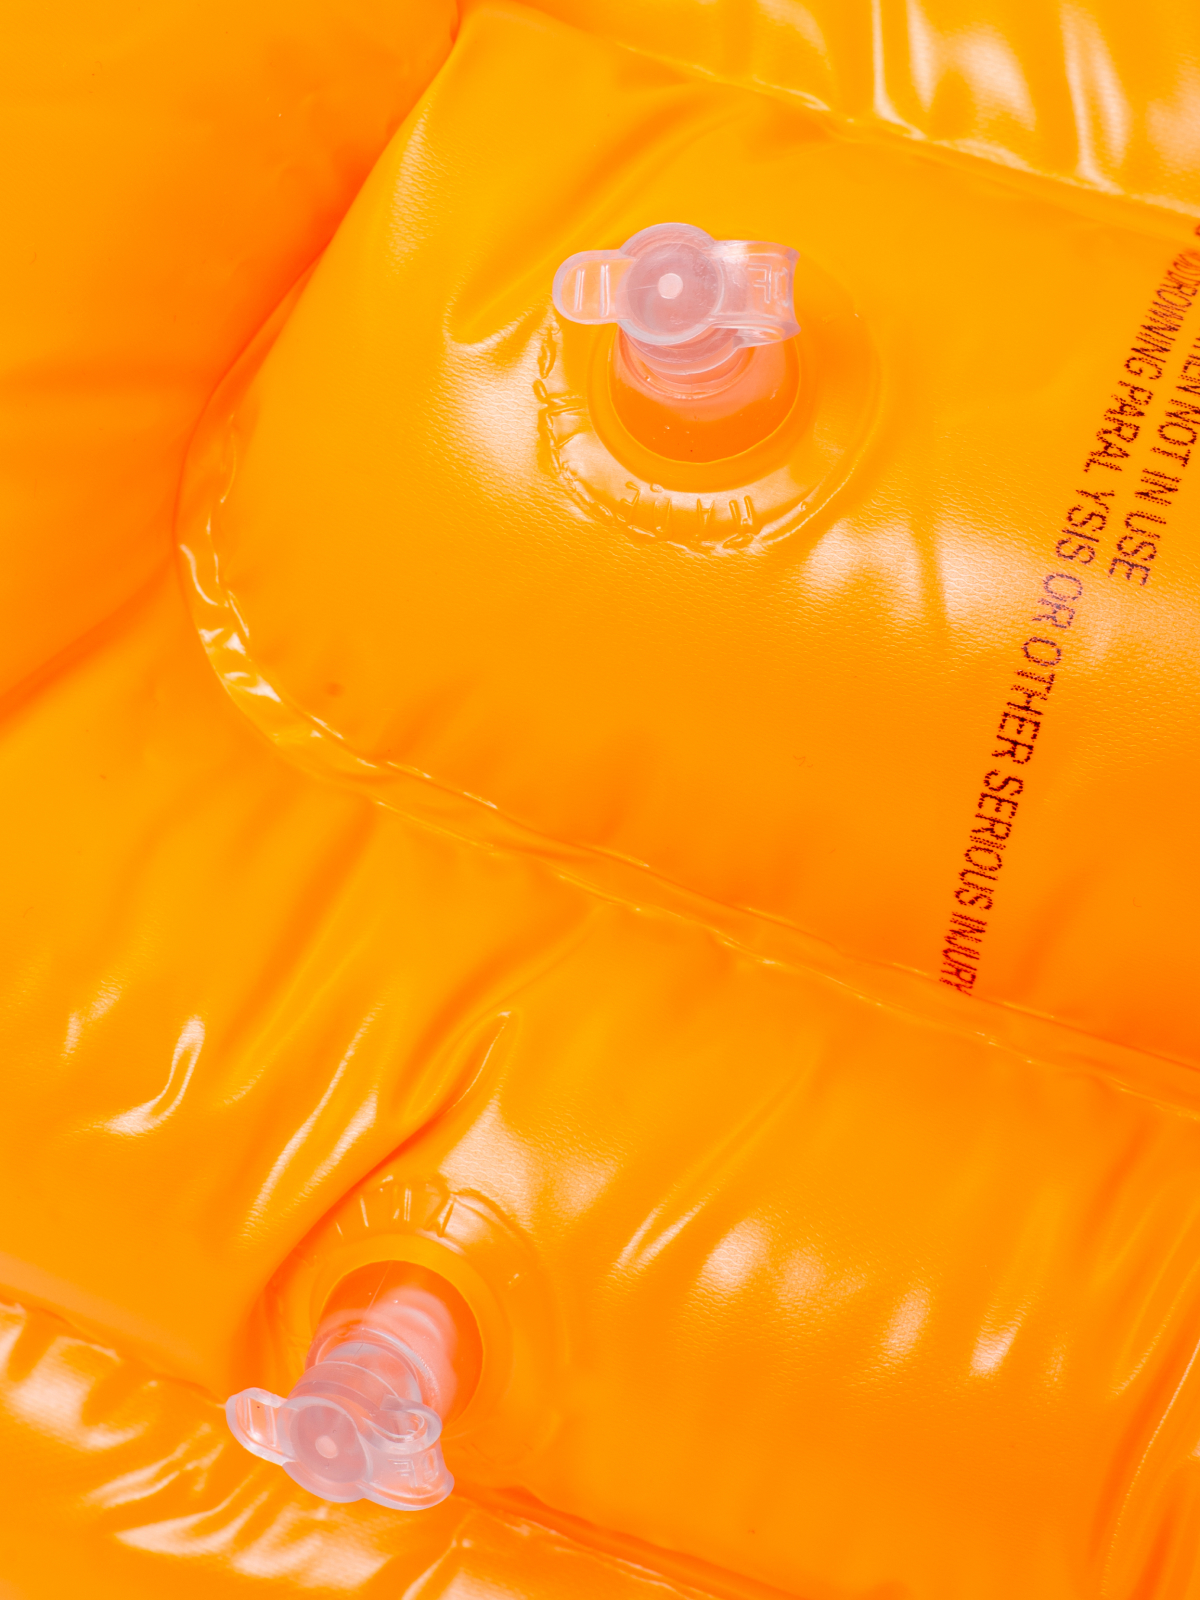 Плавательный жилет детский Solmax 8-10 лет рост 110-140 см оранжевый SM90707